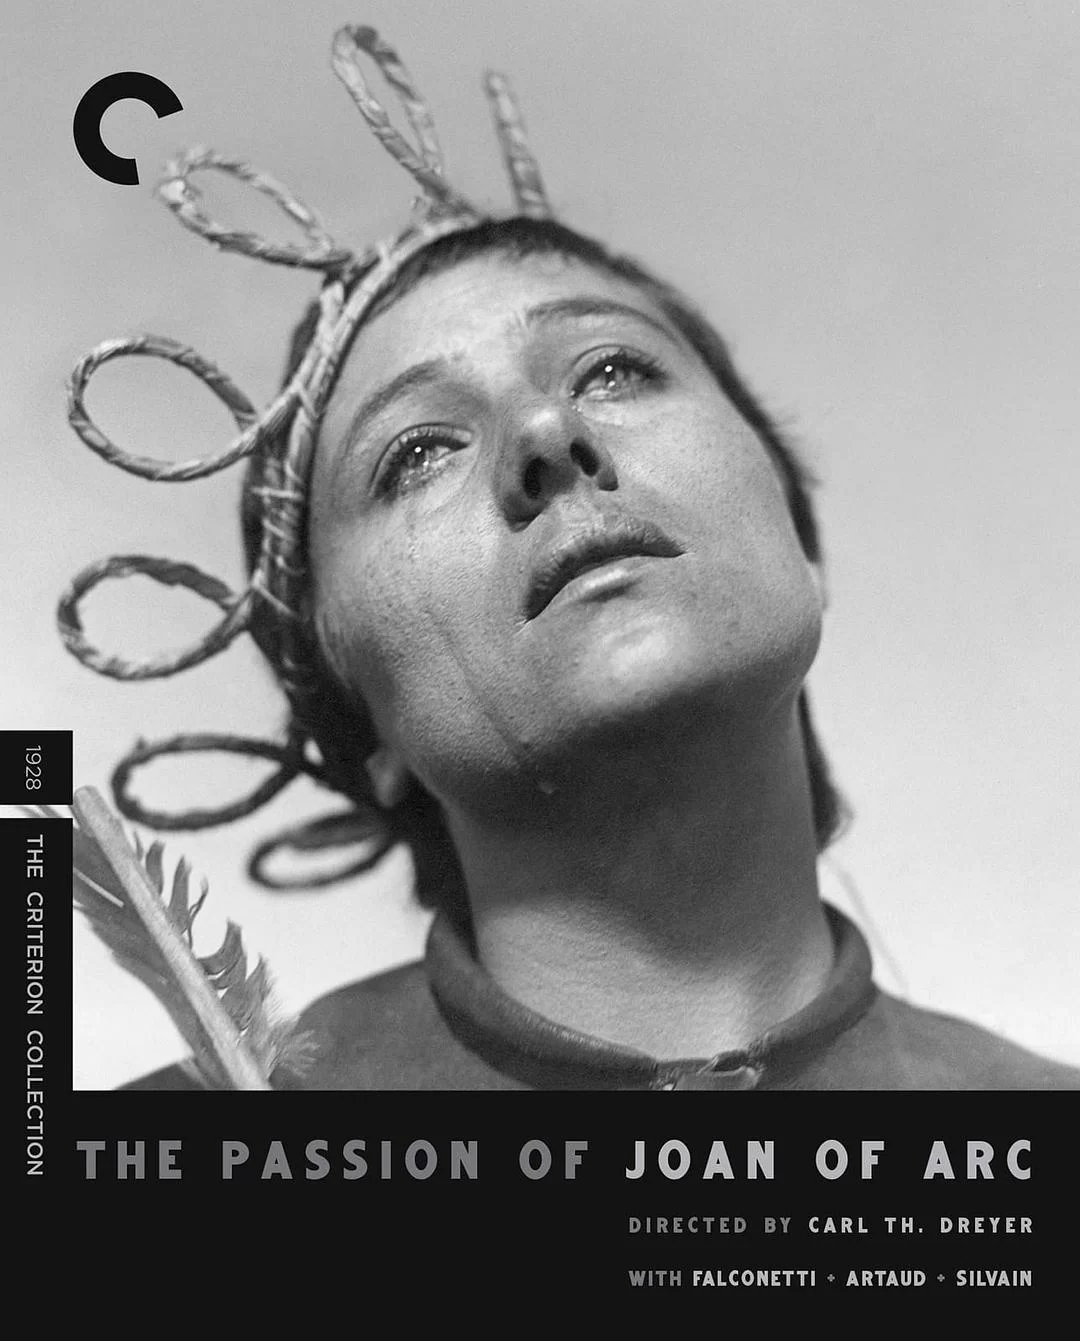 圣女贞德蒙难记 蓝光高清MKV版/圣女贞德 / 圣女贞德的激情 / 圣女贞德受难记 / The Passion of Joan of Arc 1928 La passion de Jeanne d’Arc 8.75G